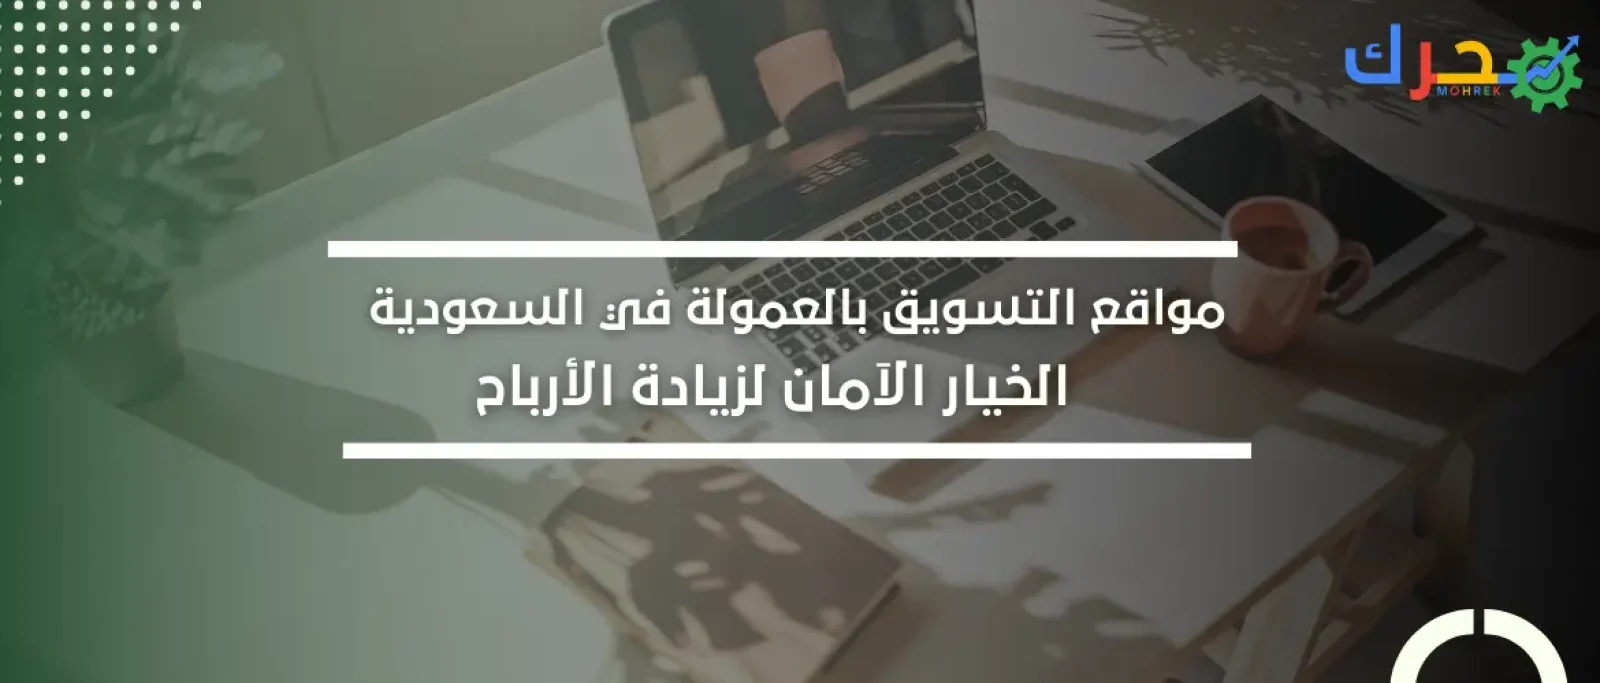 مواقع التسويق بالعمولة في السعودية